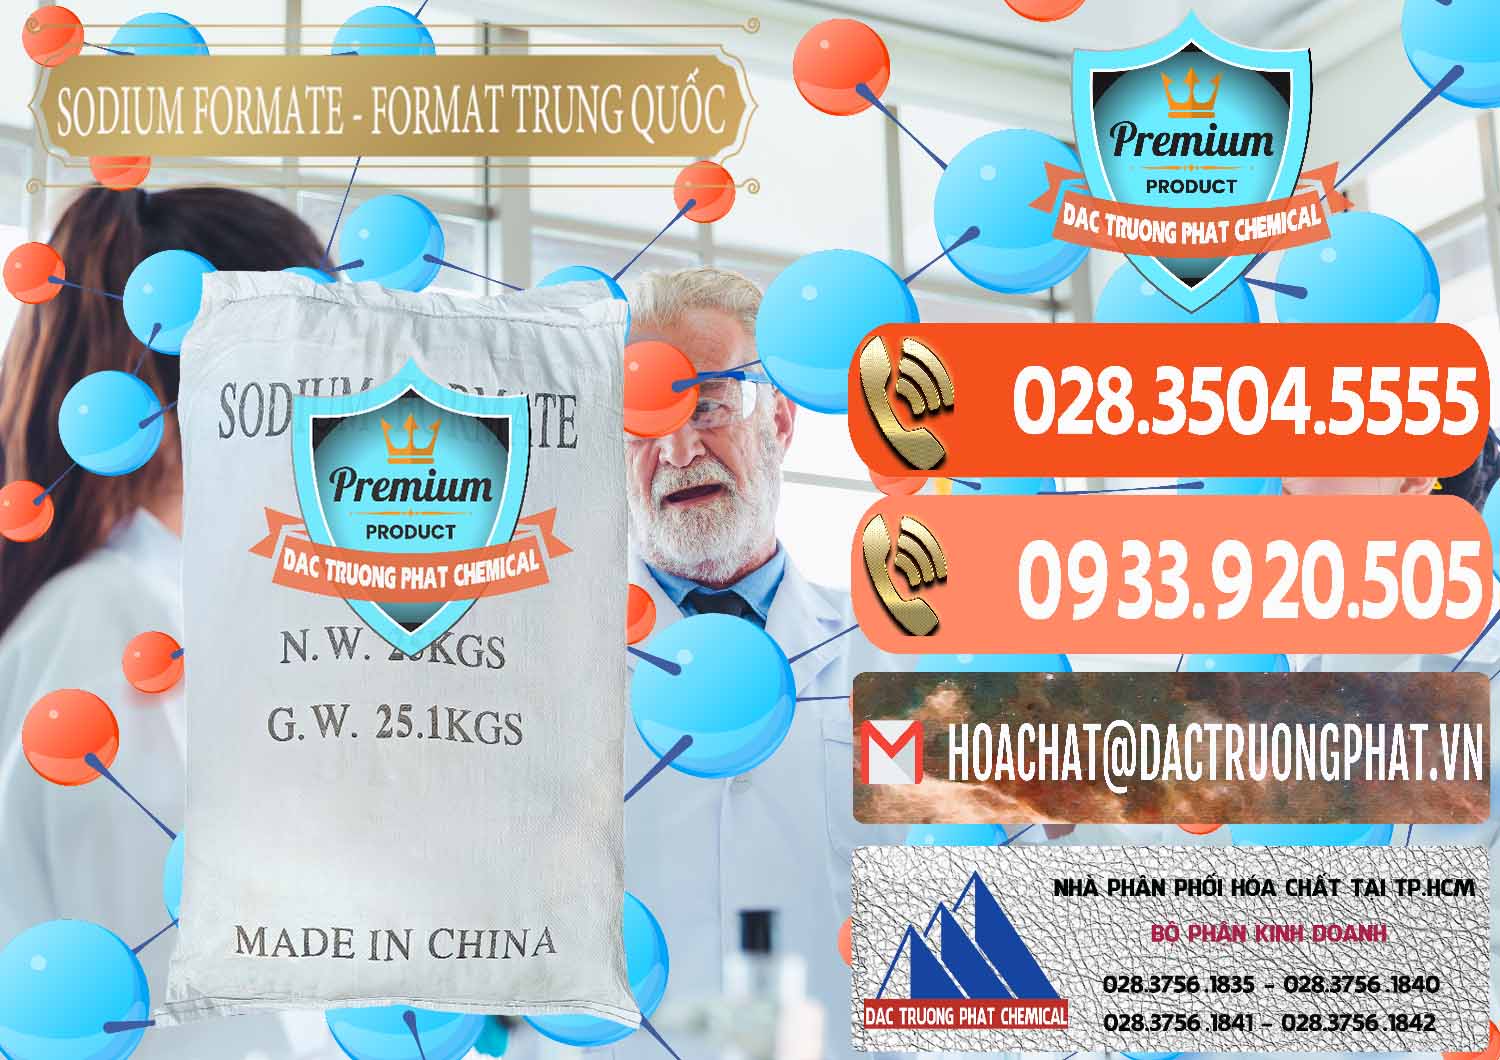 Cty chuyên cung cấp ( bán ) Sodium Formate - Natri Format Trung Quốc China - 0142 - Phân phối ( cung cấp ) hóa chất tại TP.HCM - hoachatmientay.com